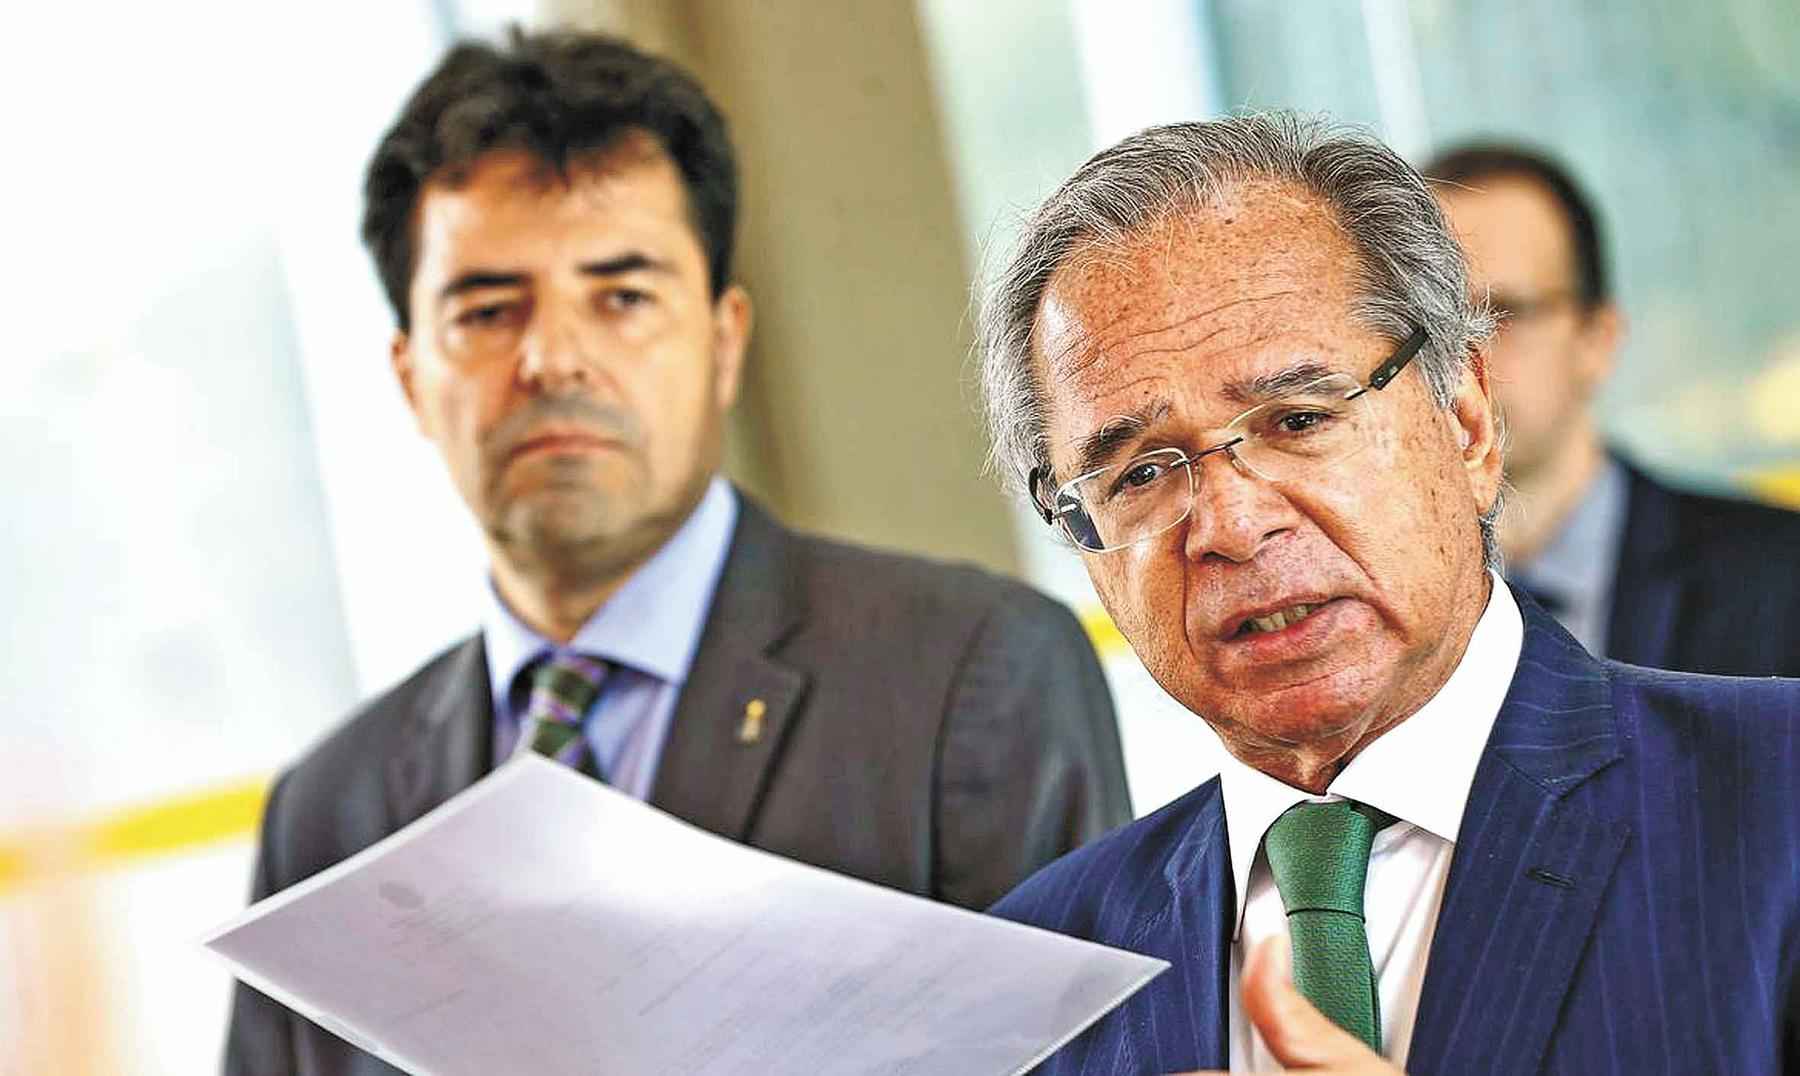 O novo futuro ex-ministro de Minas e Energia, aluno de Olavo de Carvalho - MARCELO CAMARGO/AGÊNCIA BRASIL